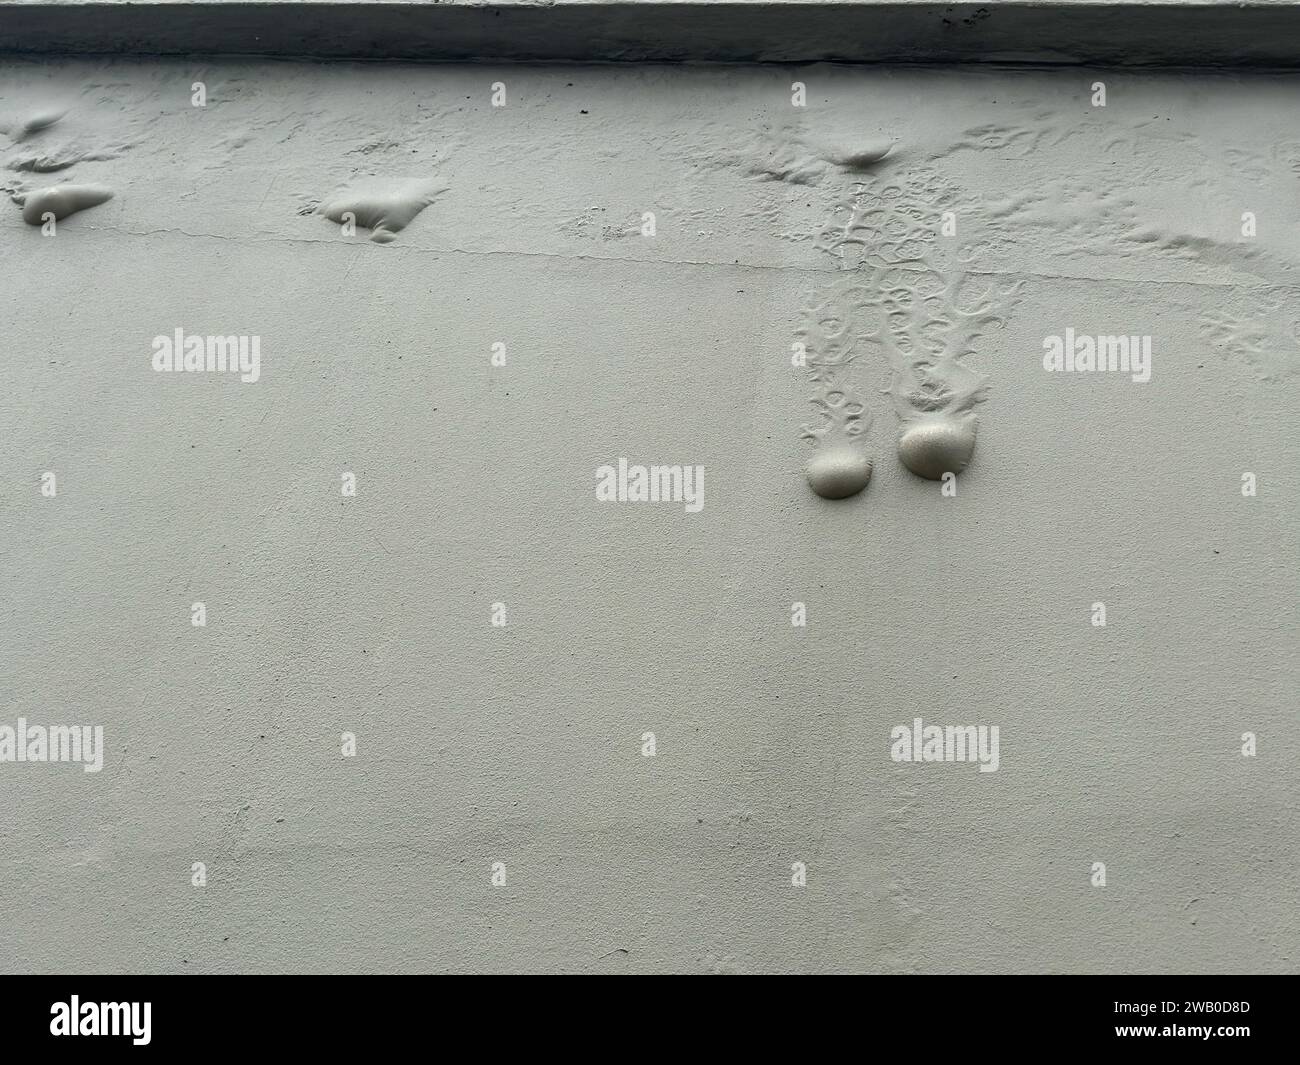 Eine graue Zementaußenwand, die mit einer Textur bemalt ist. Luftblasen oder Feuchtigkeitsblasen laufen durch Wasserschäden an der Wand herunter. Stockfoto